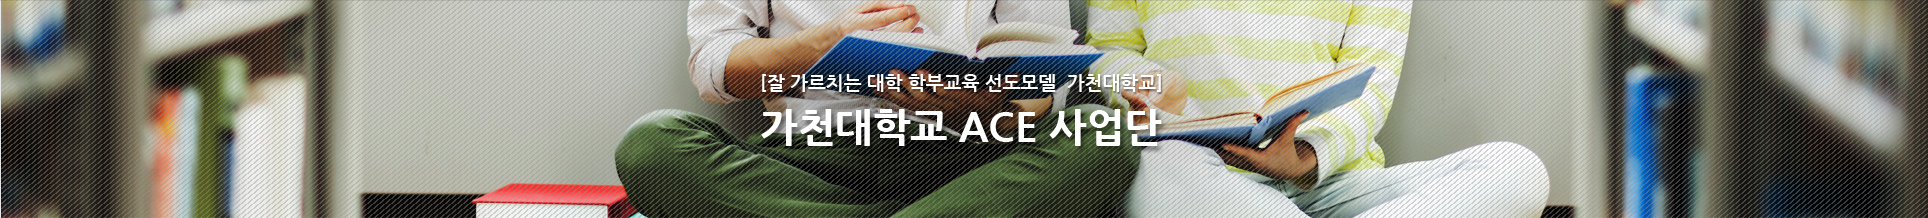 잘가르치는 대학 학부교육 선도모델 가천대학교 가천대학교 ACE 사업단